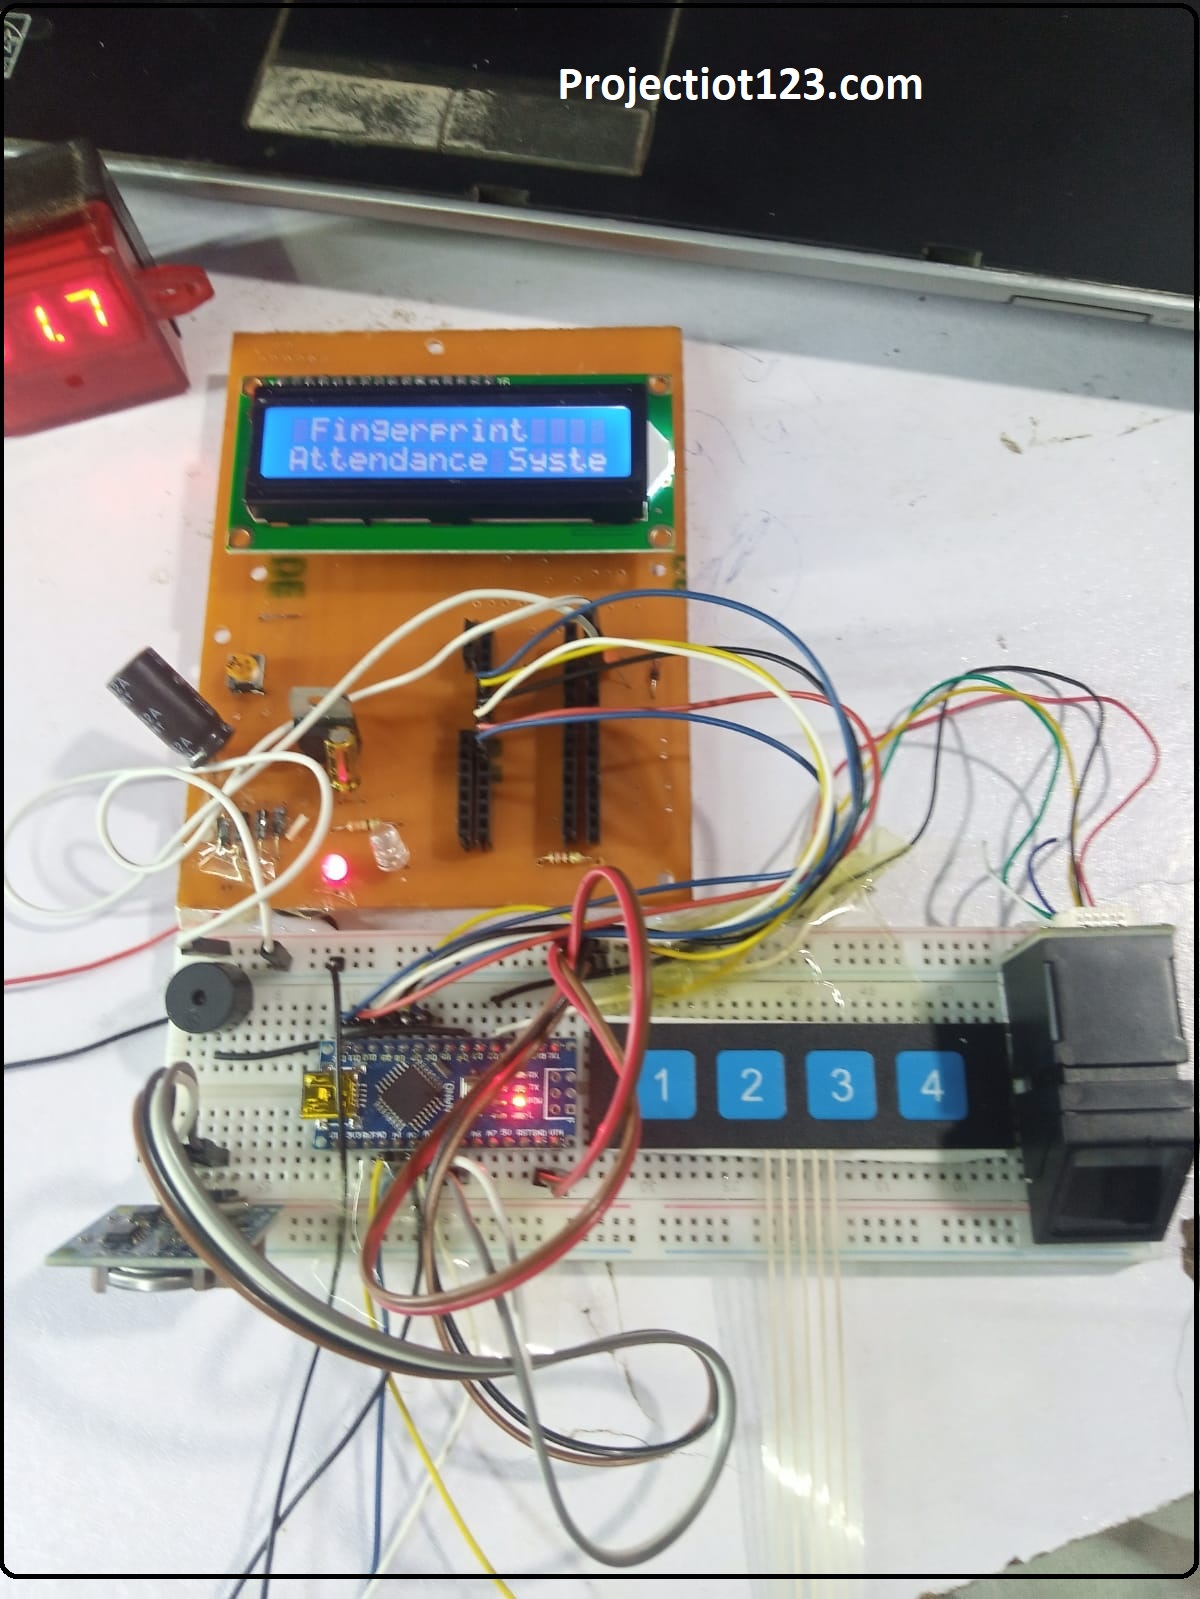 Fingerprint attendance system using arduino project